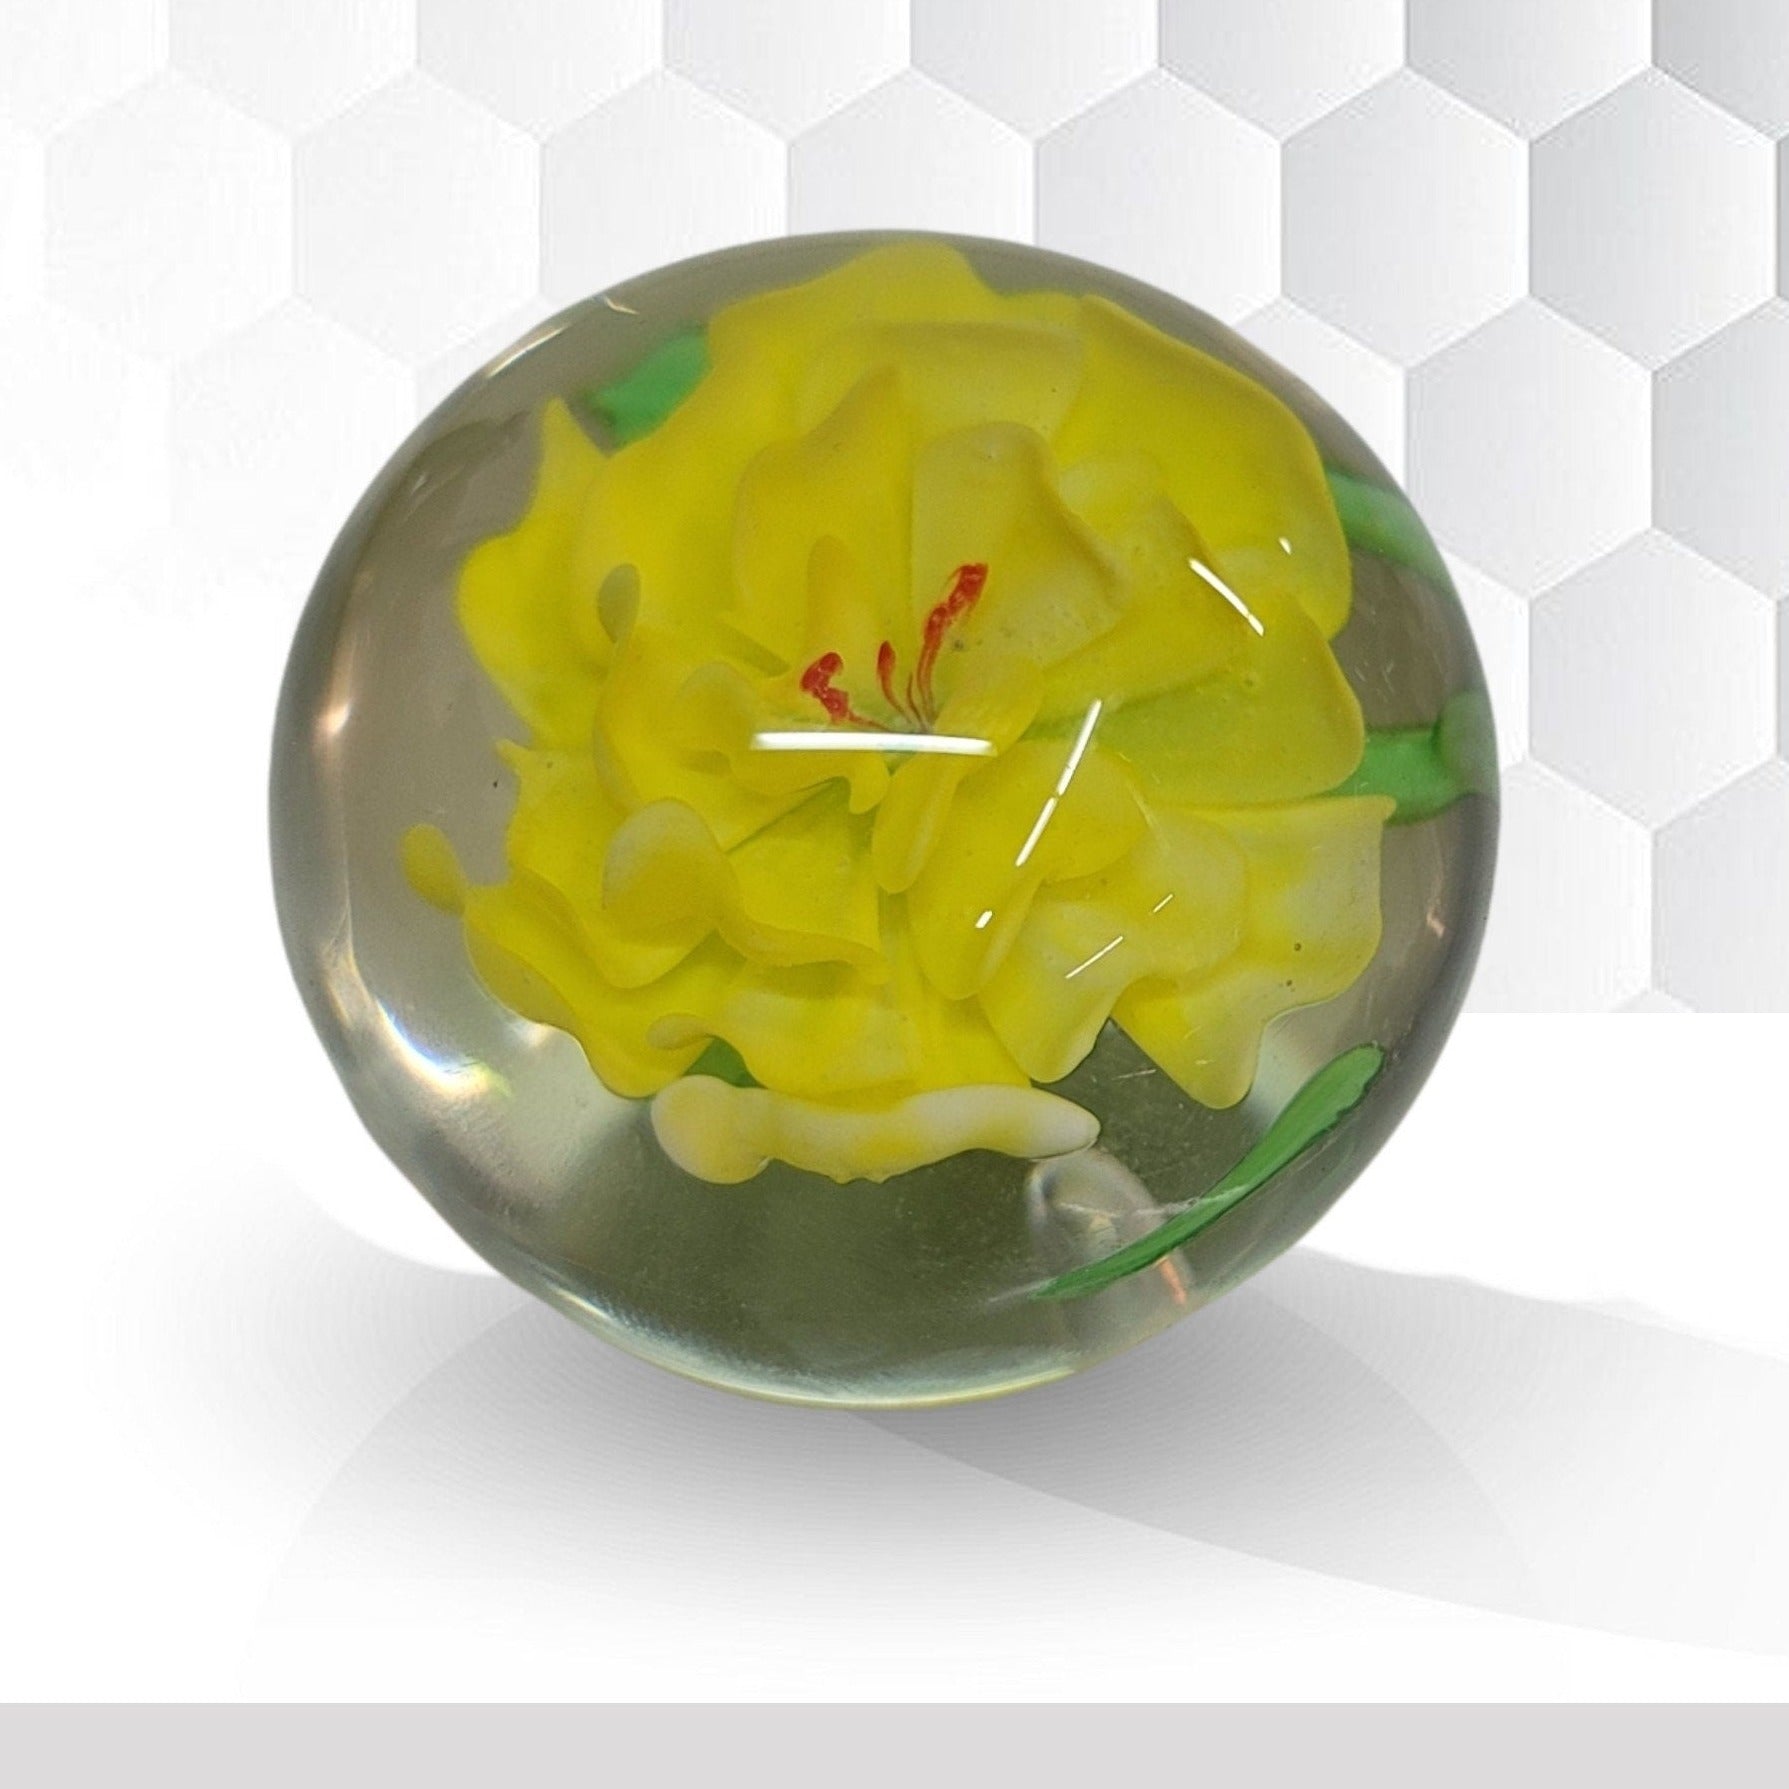 paper weight art glass murano paperweight yellow flower